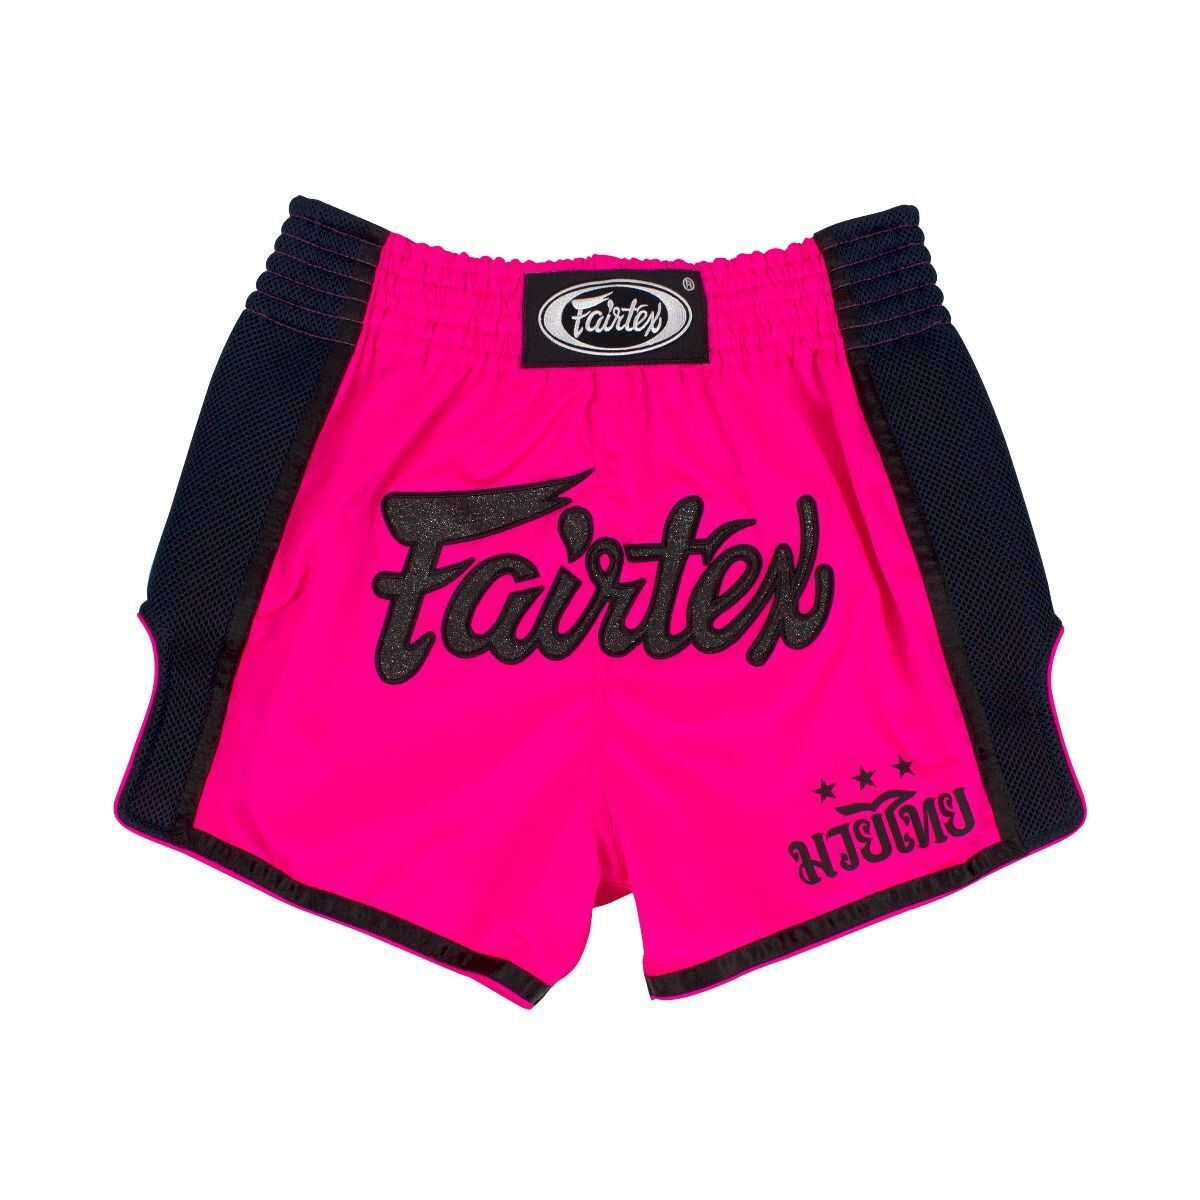 FAIRTEX - Pink Slim Cut Muay Thai Boxing Shorts (BS1714) - Small